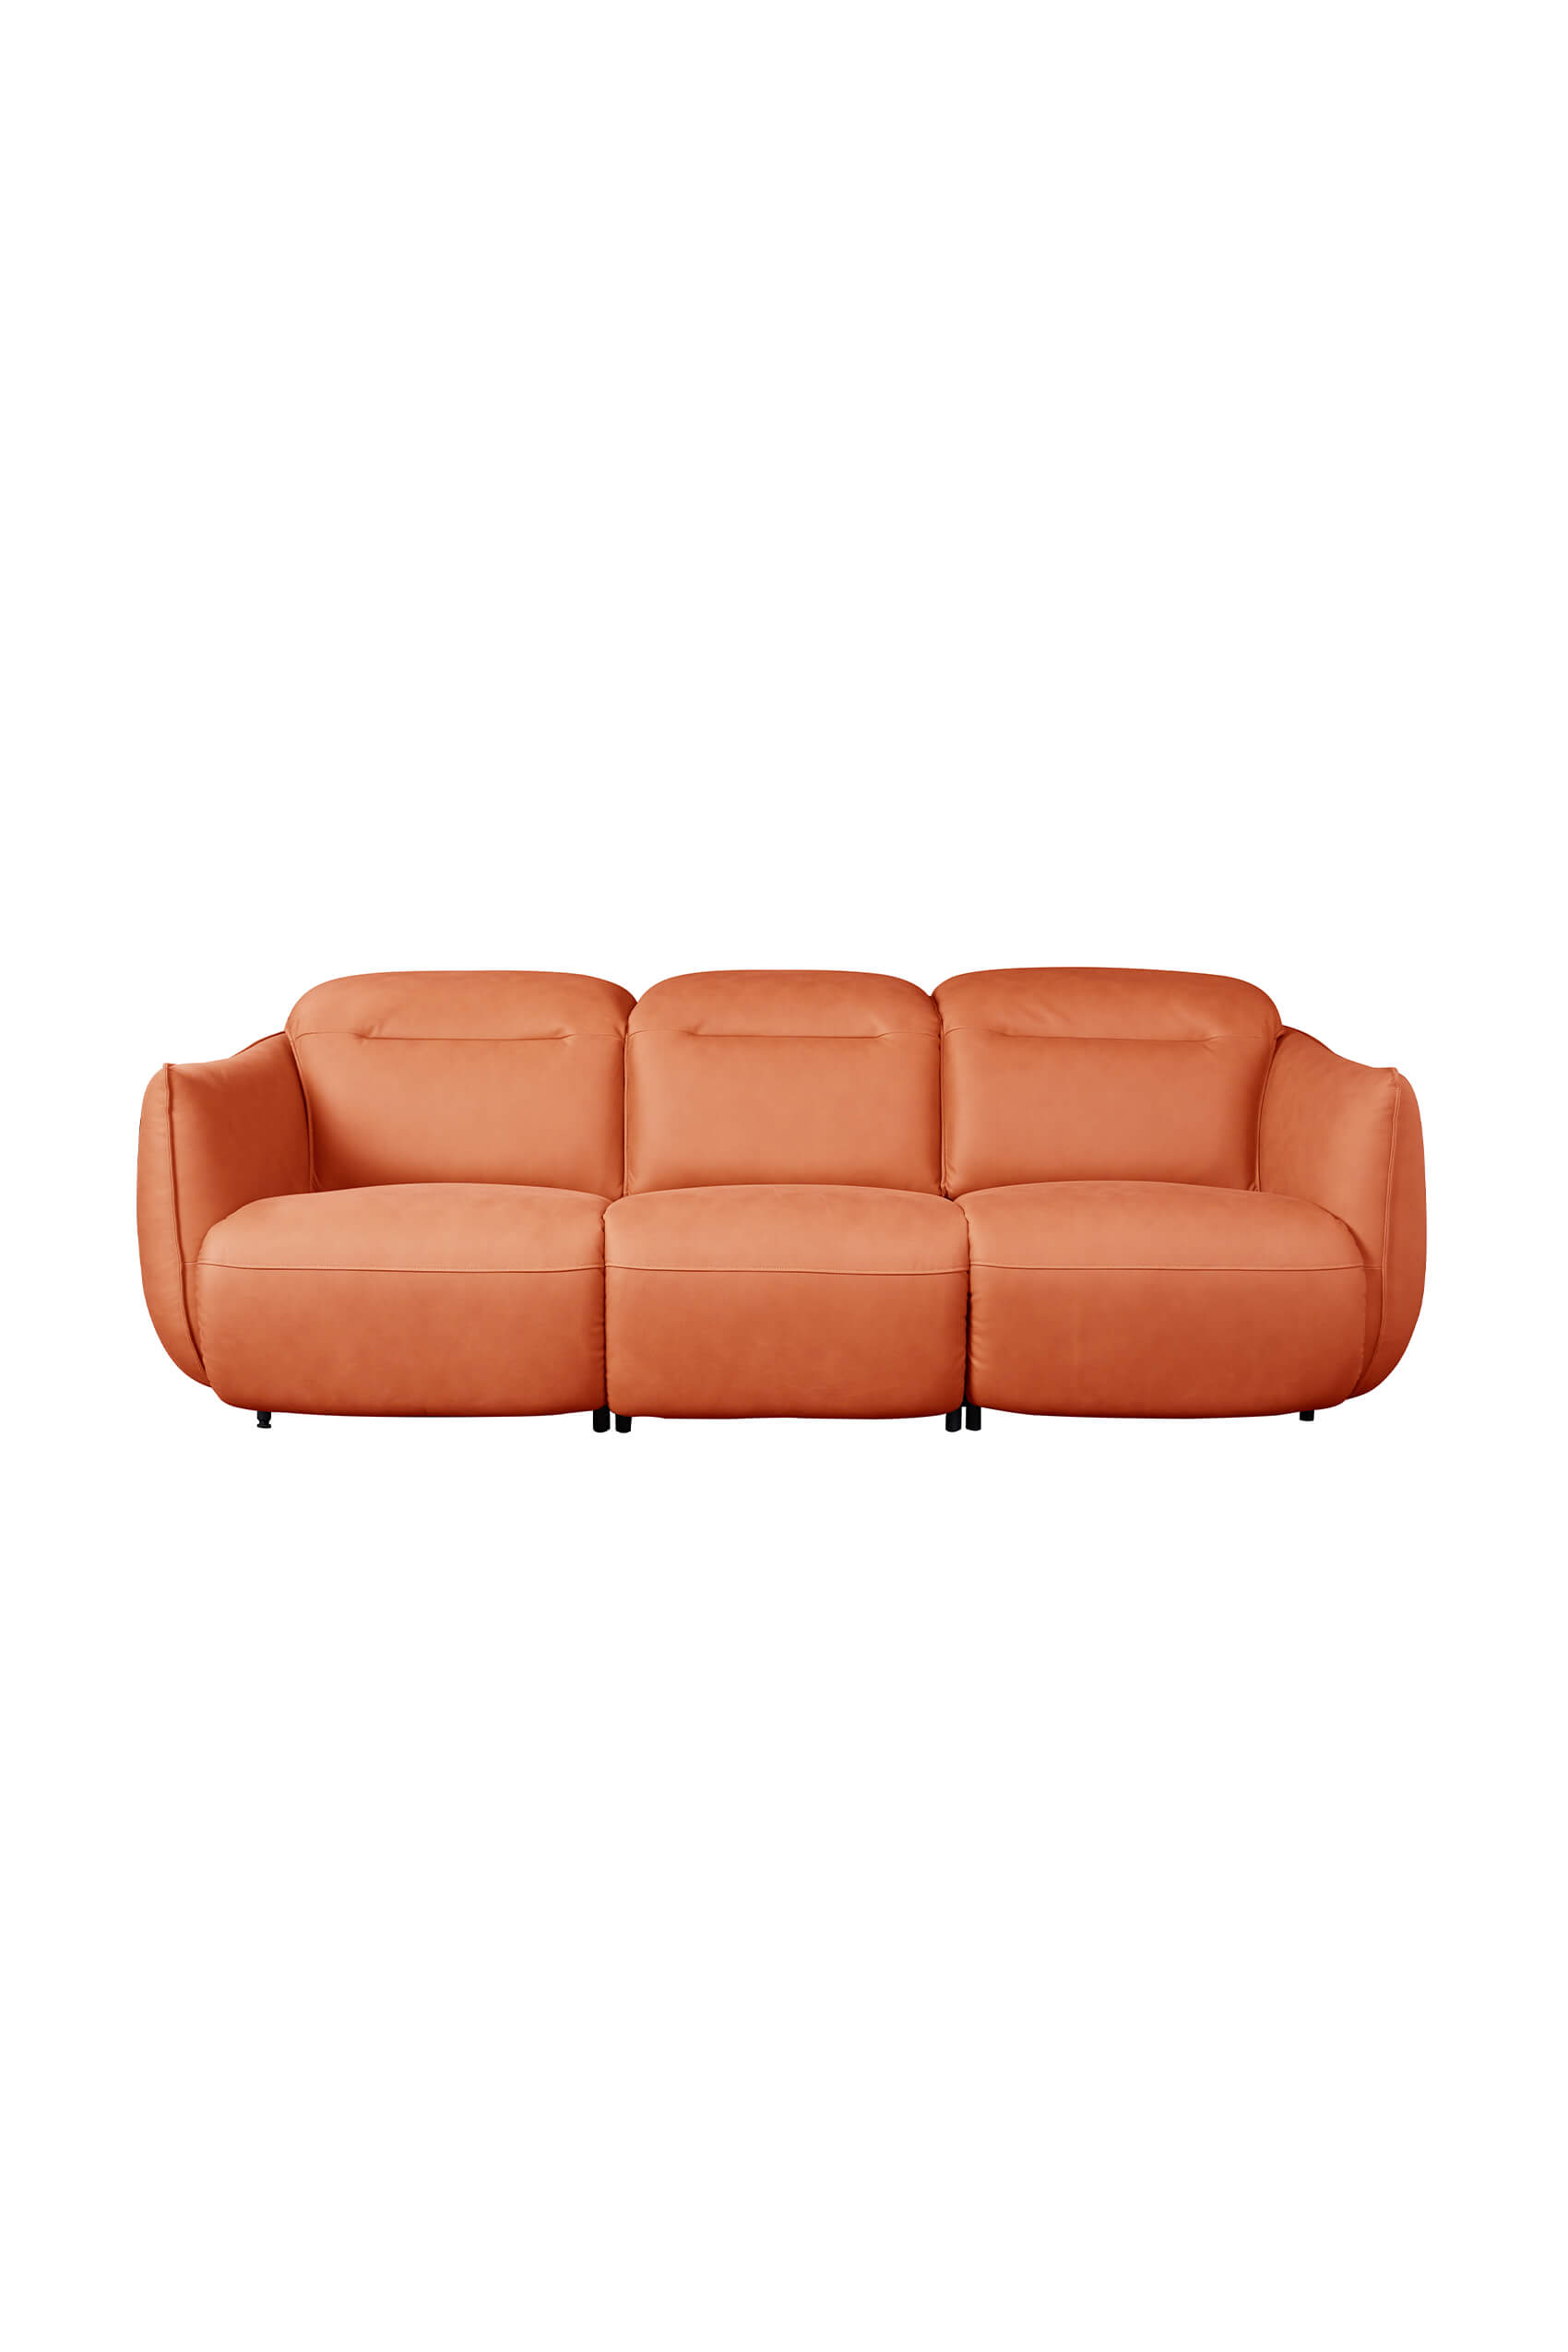 Briona High-Tech Fabric Sofa